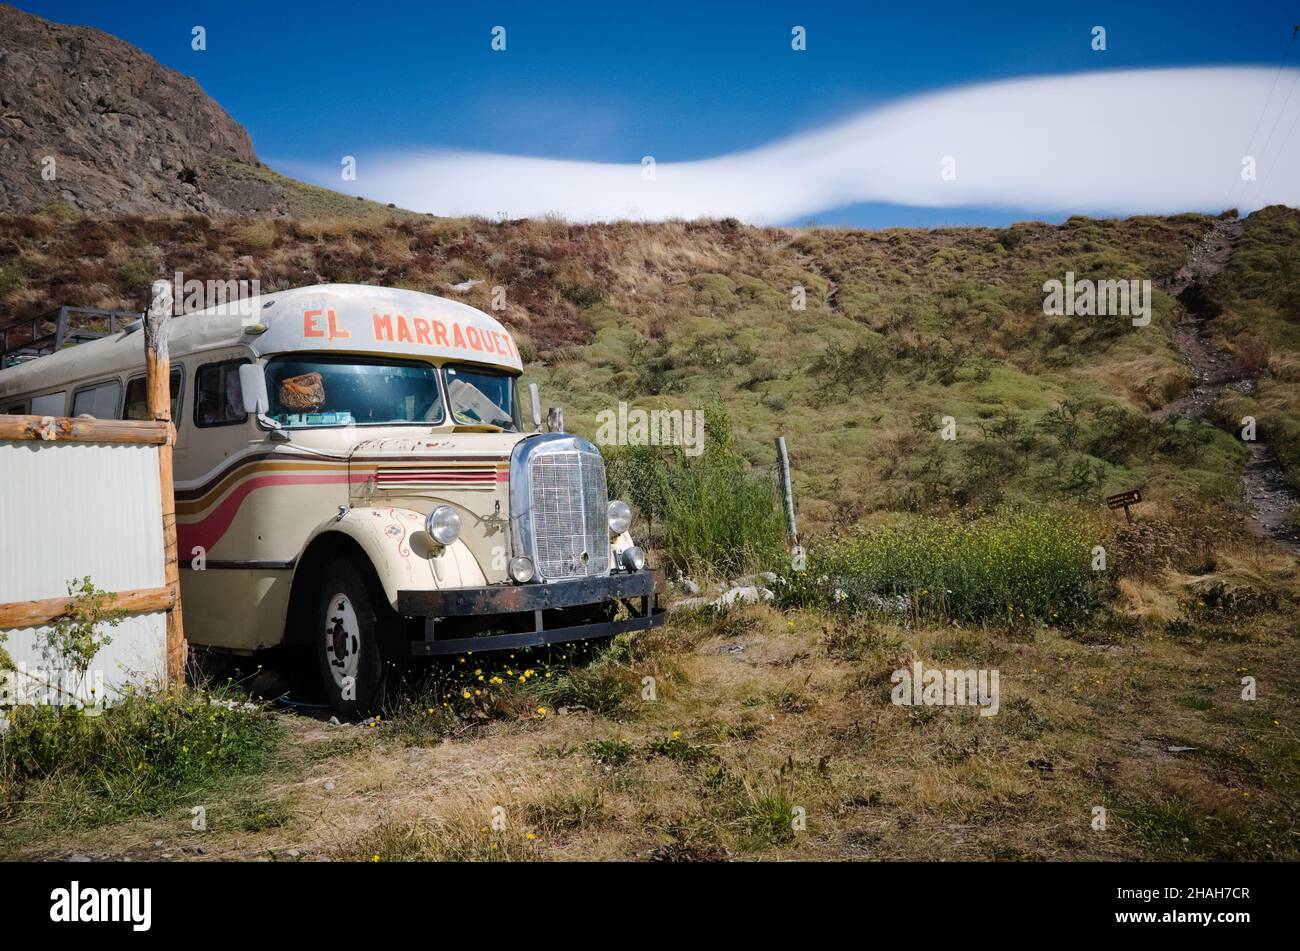 El Chalten, Santa Cruz, Argentinien - März, 2020: Der alte Mercedes-Benz-Bus 1940s mit der Aufschrift La Marraqueta befindet sich in der Nähe des Wanderweges zur Laguna Torre Stockfoto